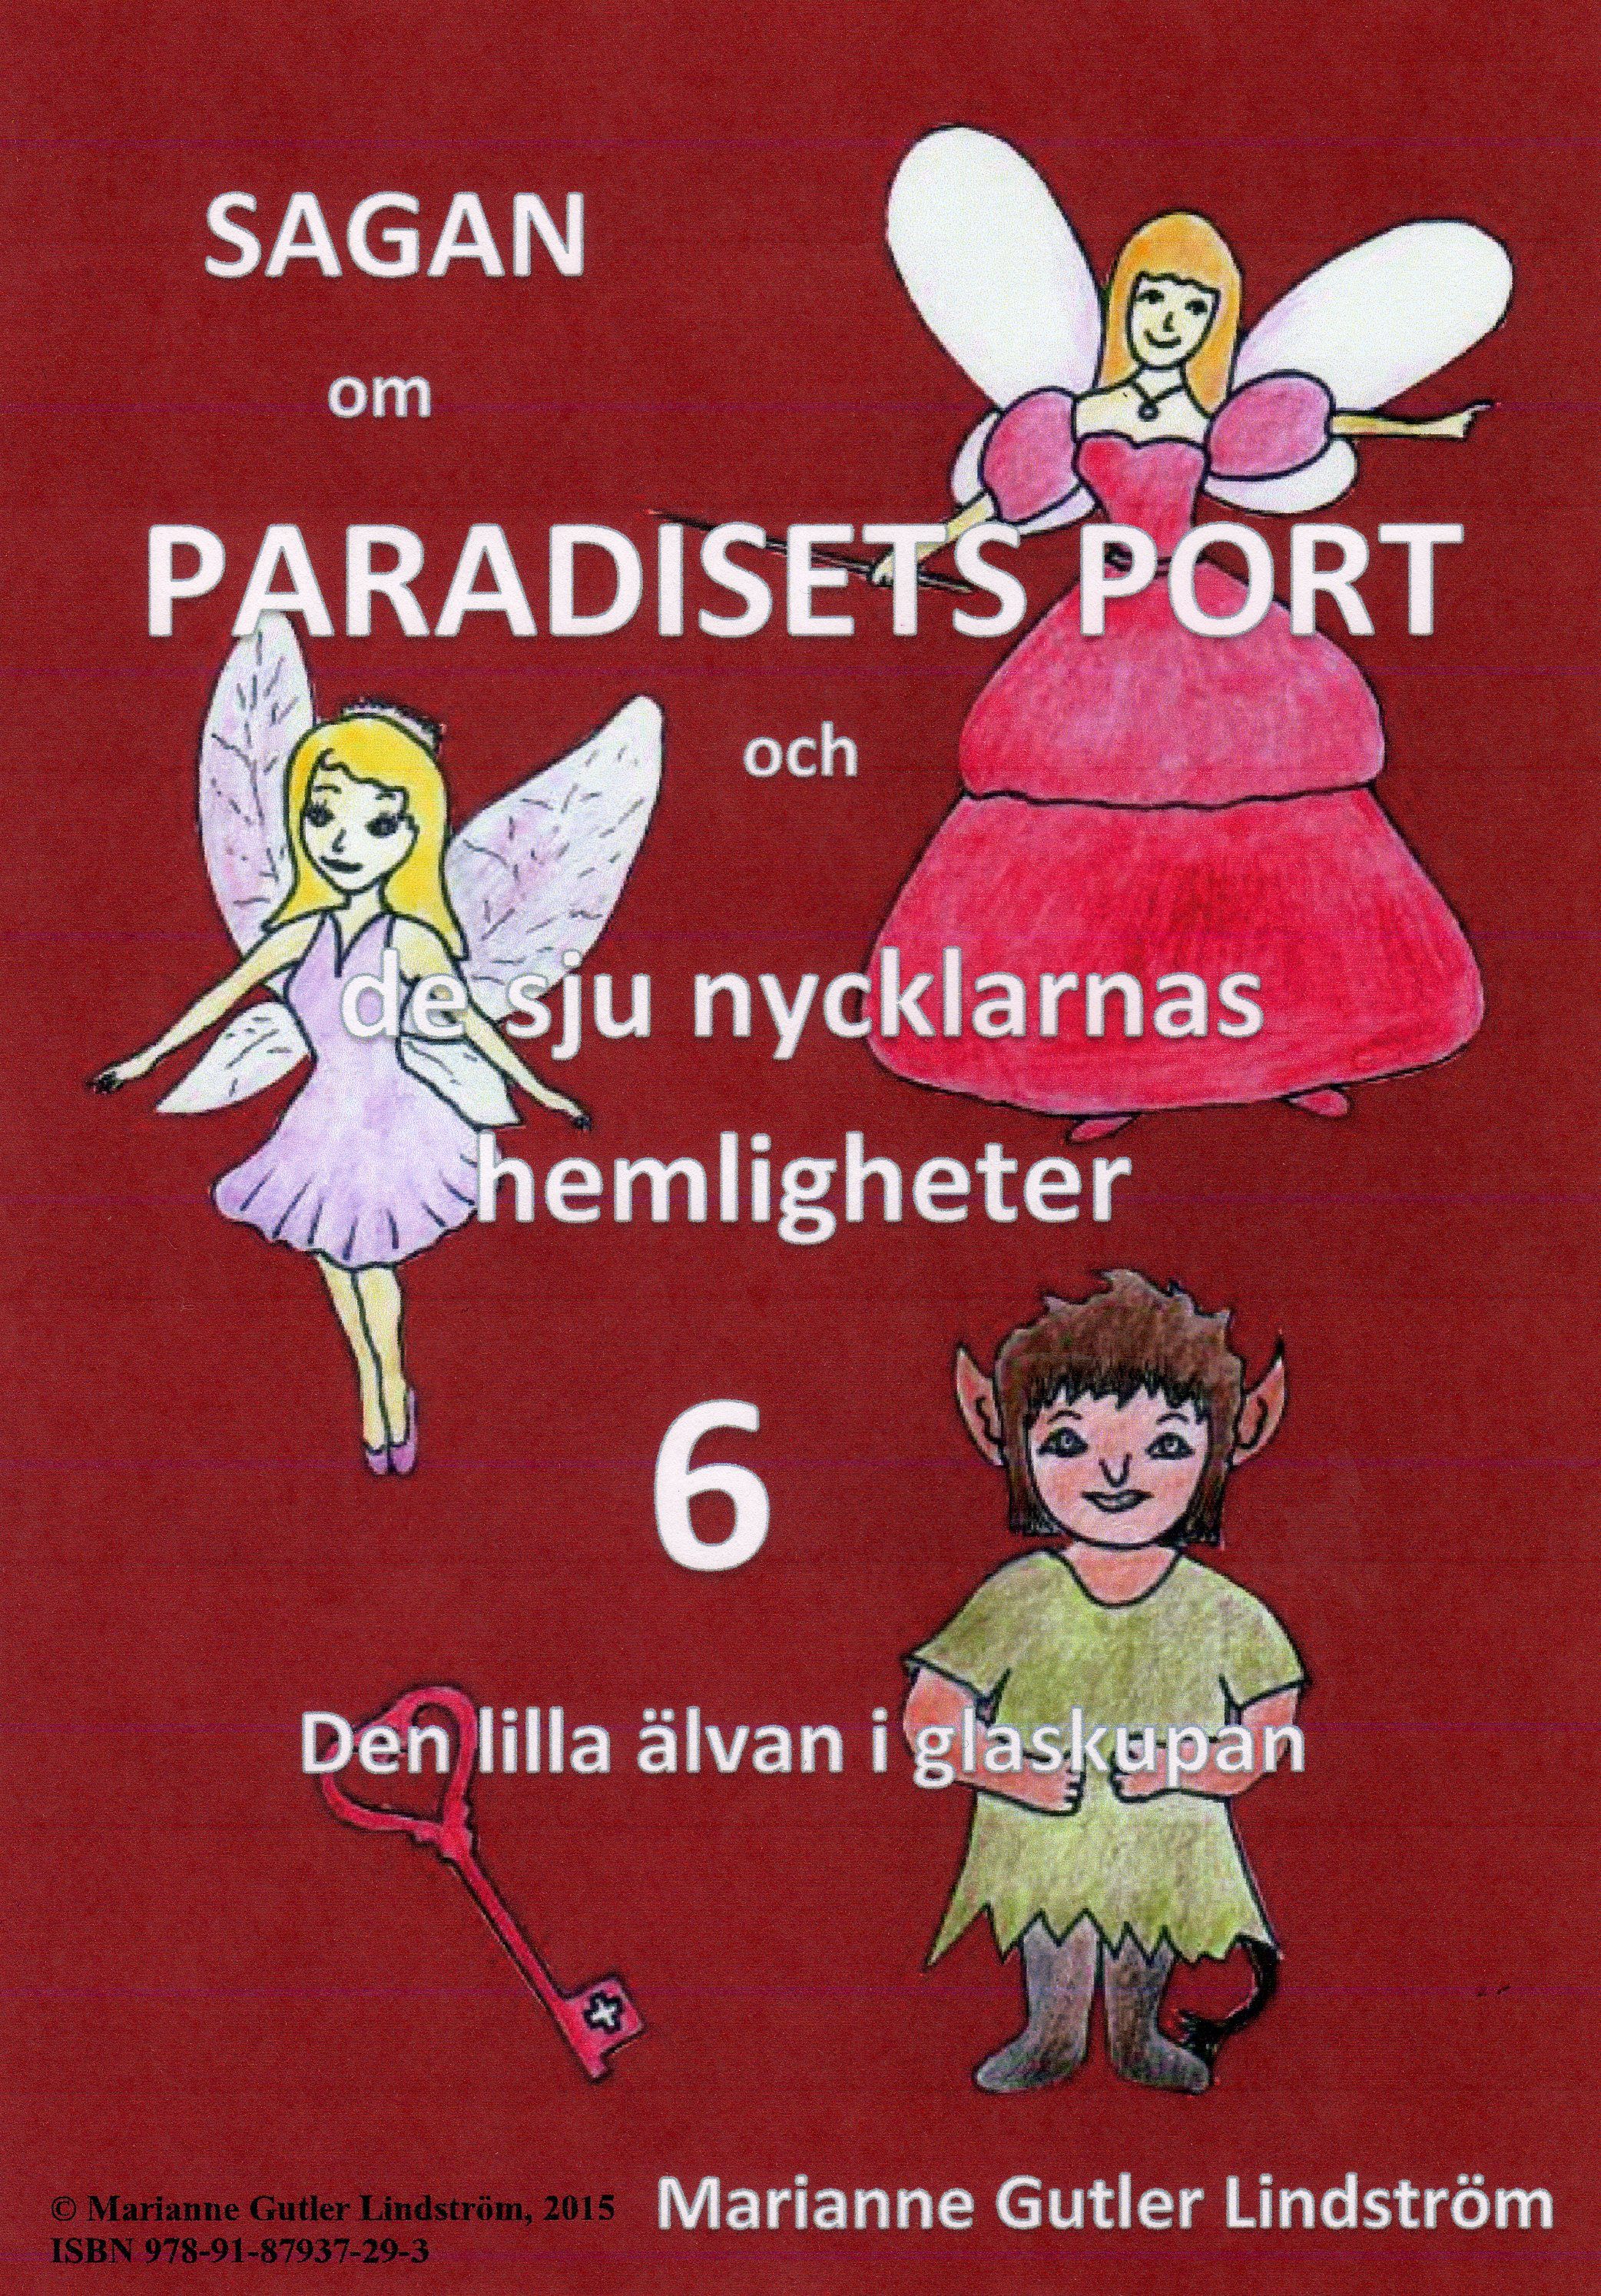 Sagan om Paradisets Port 6 Den lilla älvan i glaskupan, e-bok av Marianne Gutler Lindström